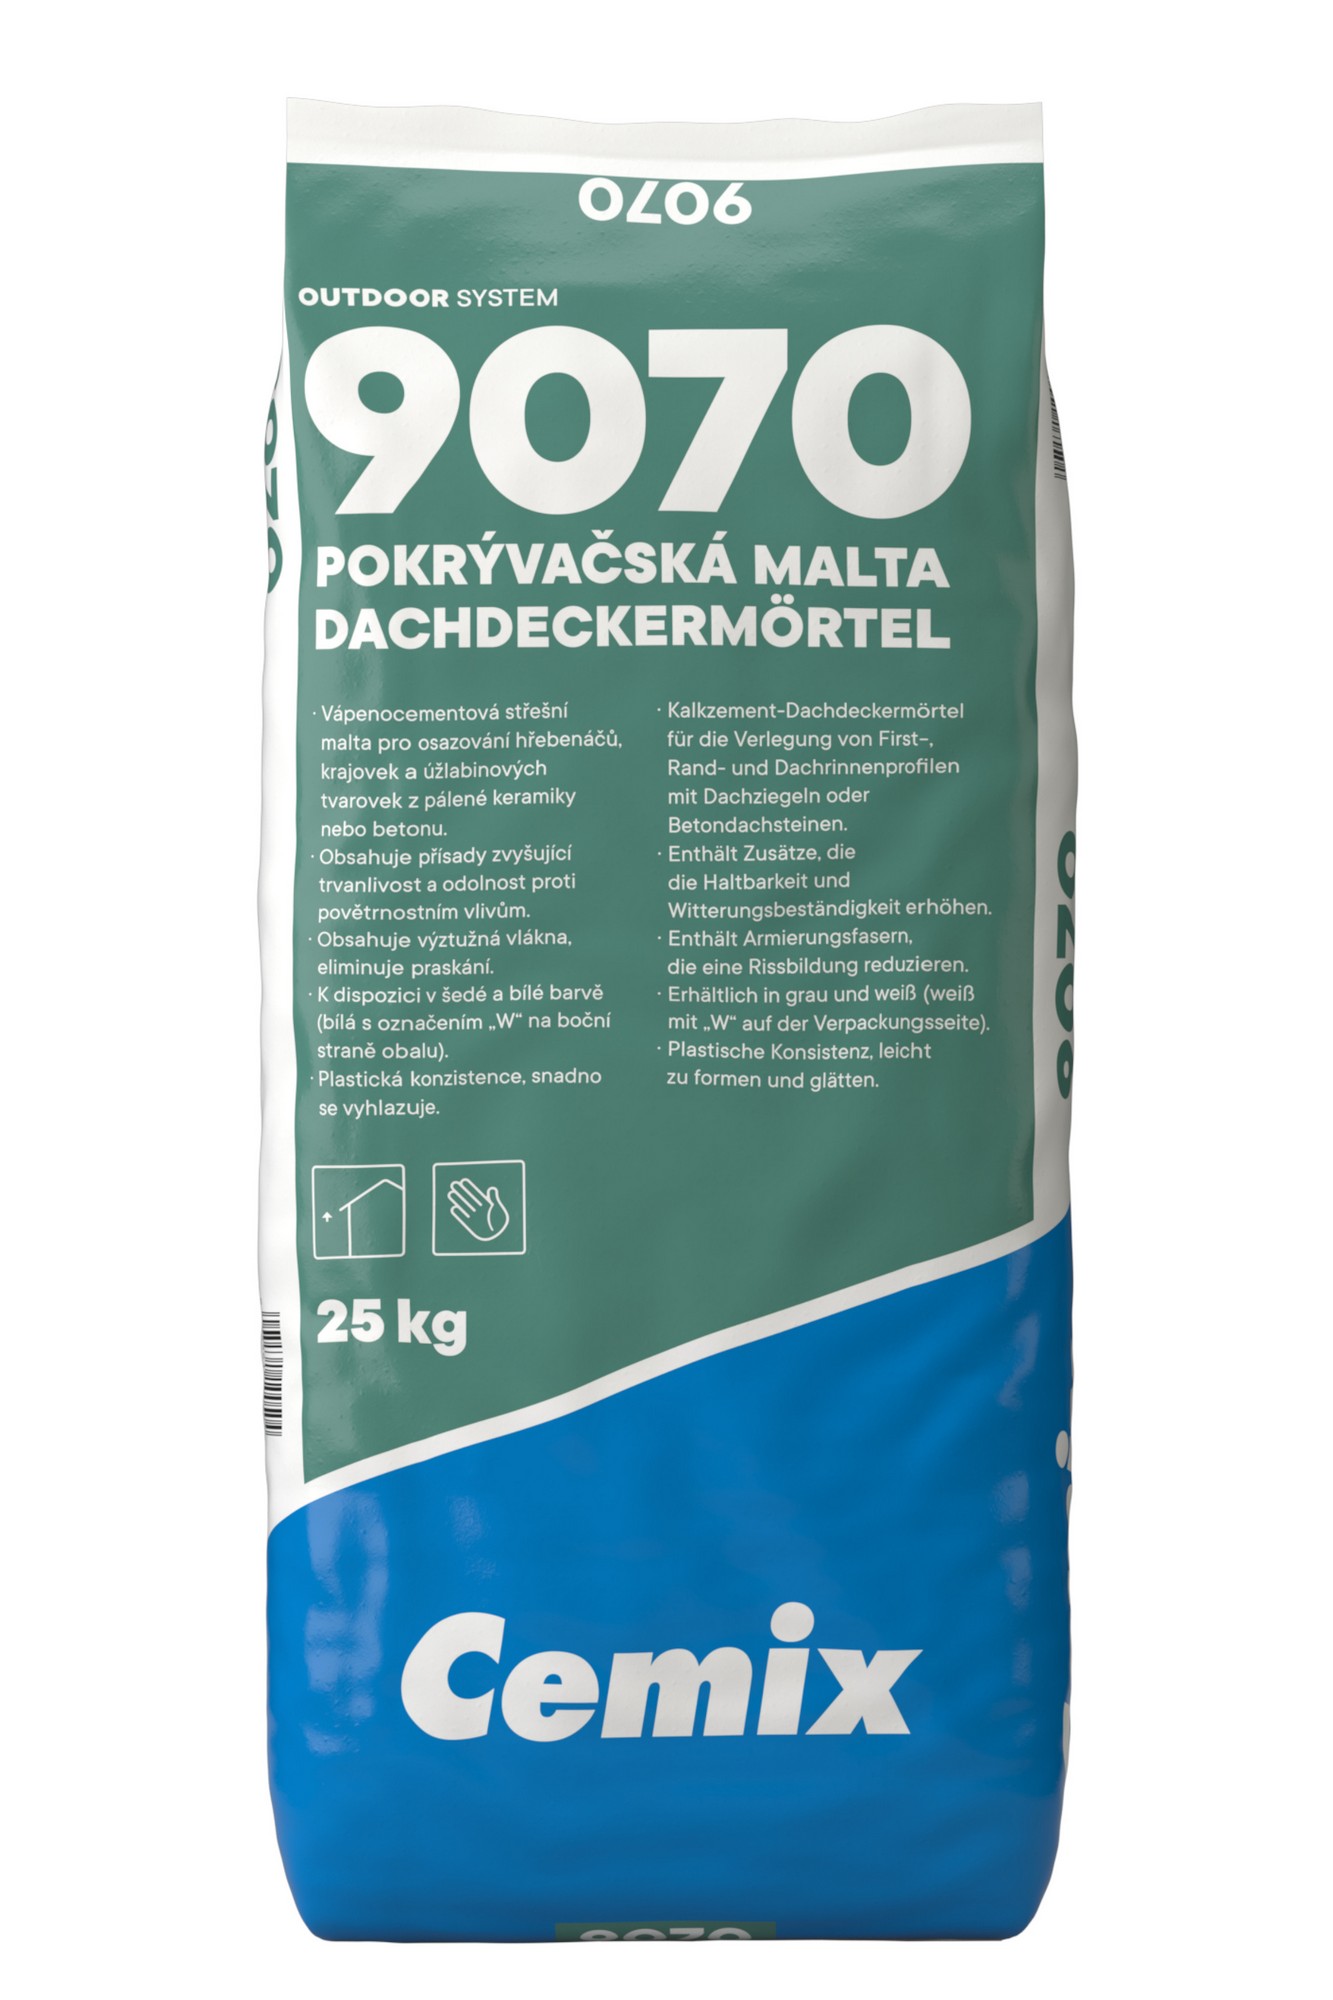 Malta pokrývačská Cemix 9070 25 kg